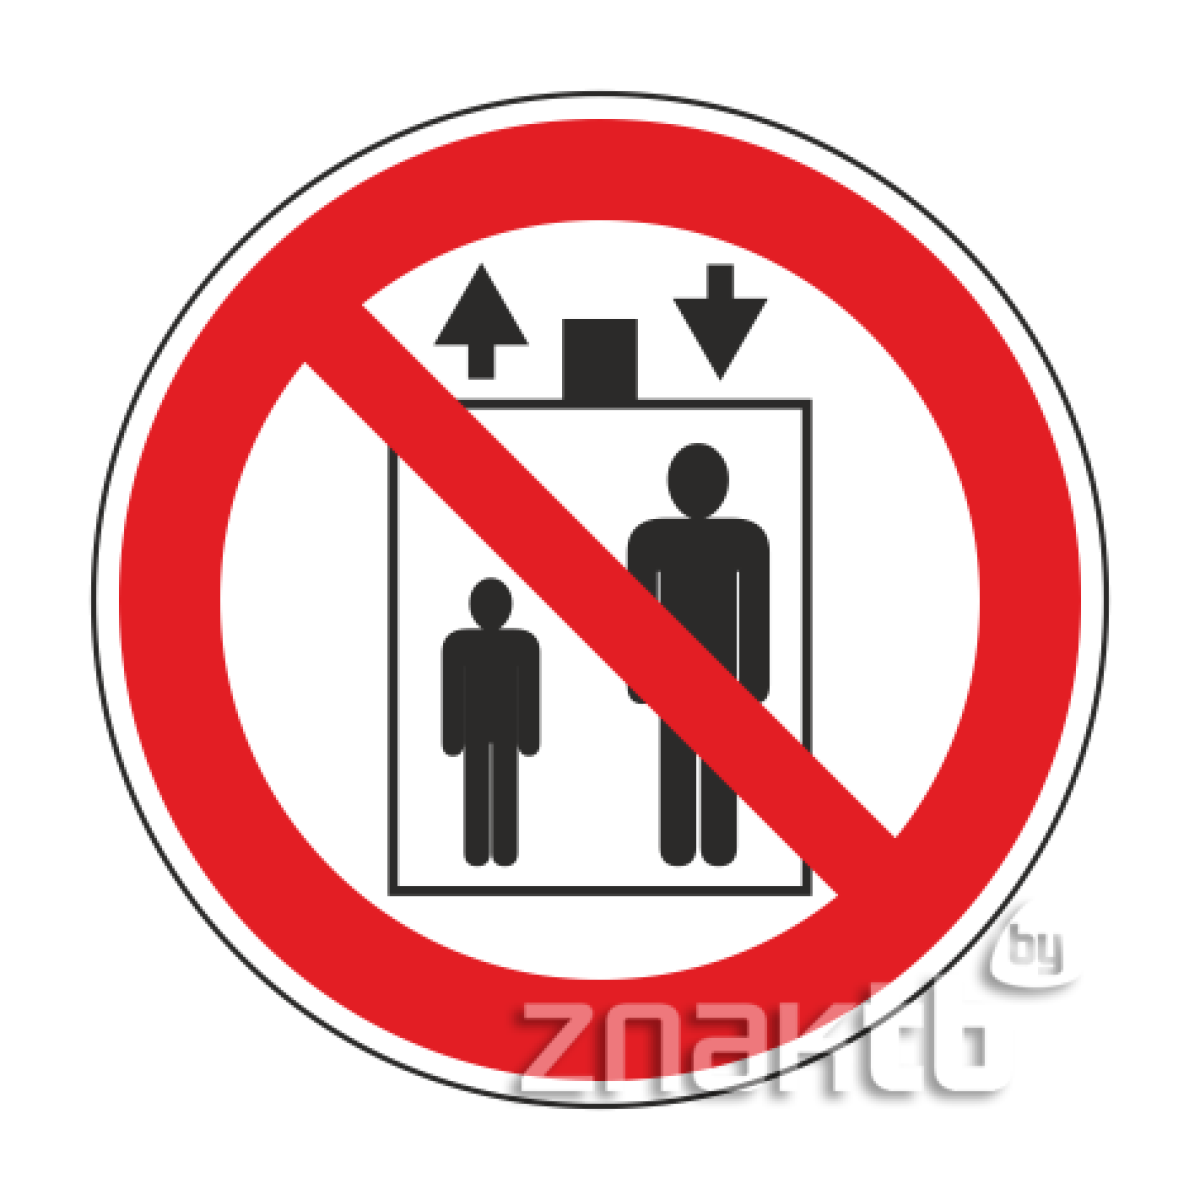 Знак Запрещается пользоваться лифтом для подъема людей код Р34